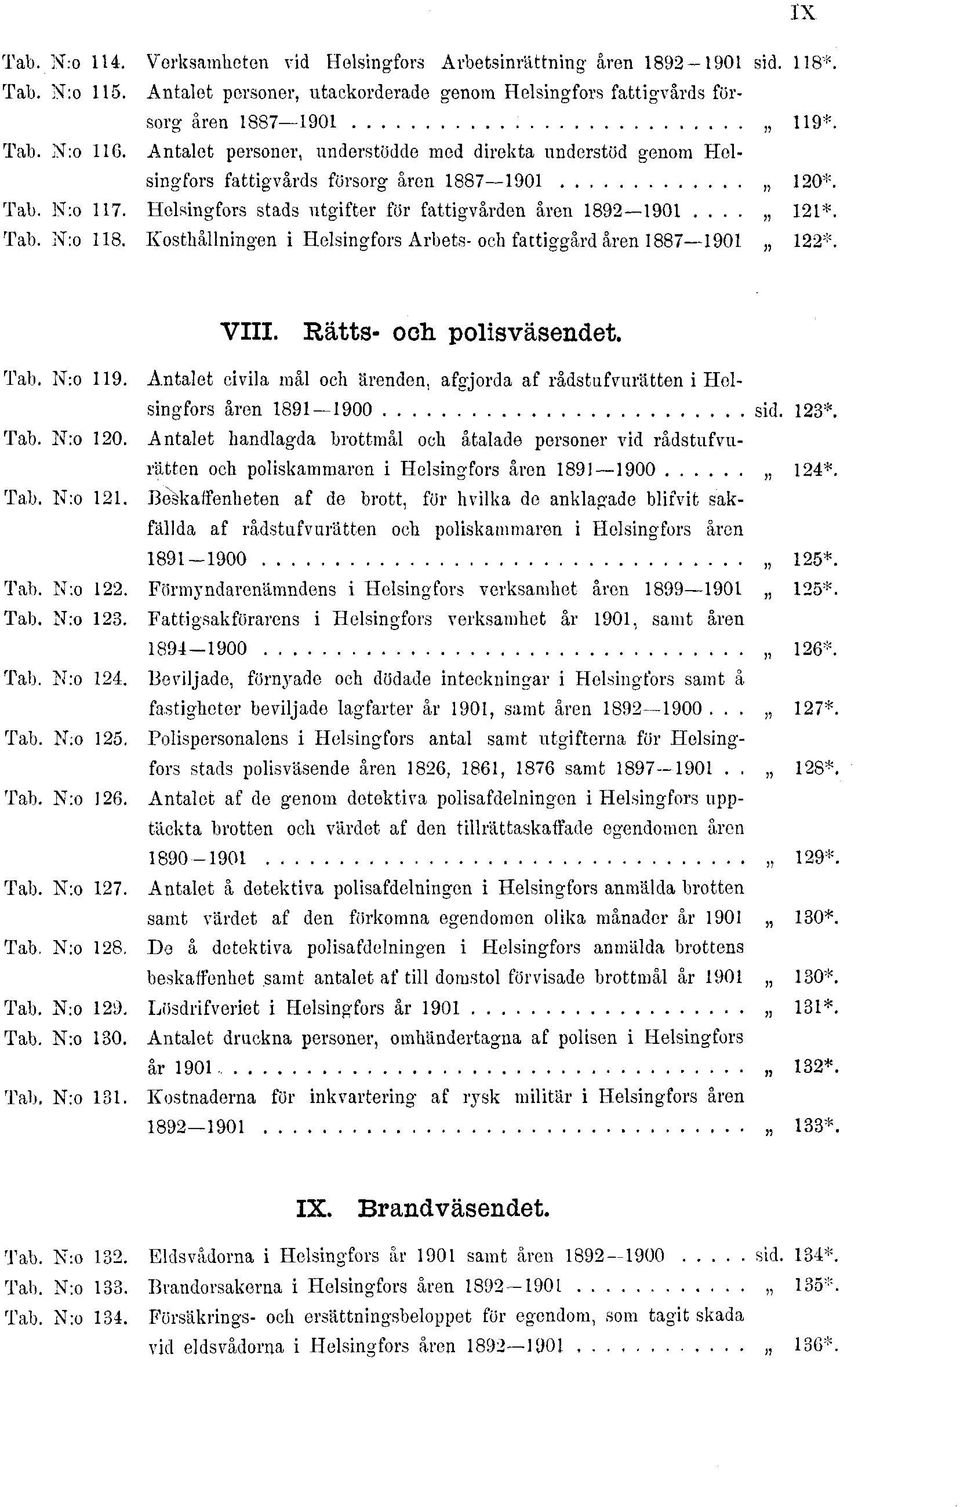 Kosthållningen i Helsingfors Arbets-och fattiggård åren 1887 1901 122*. VIII. Rätts- och polisväsendet. Tab. N:o 119.